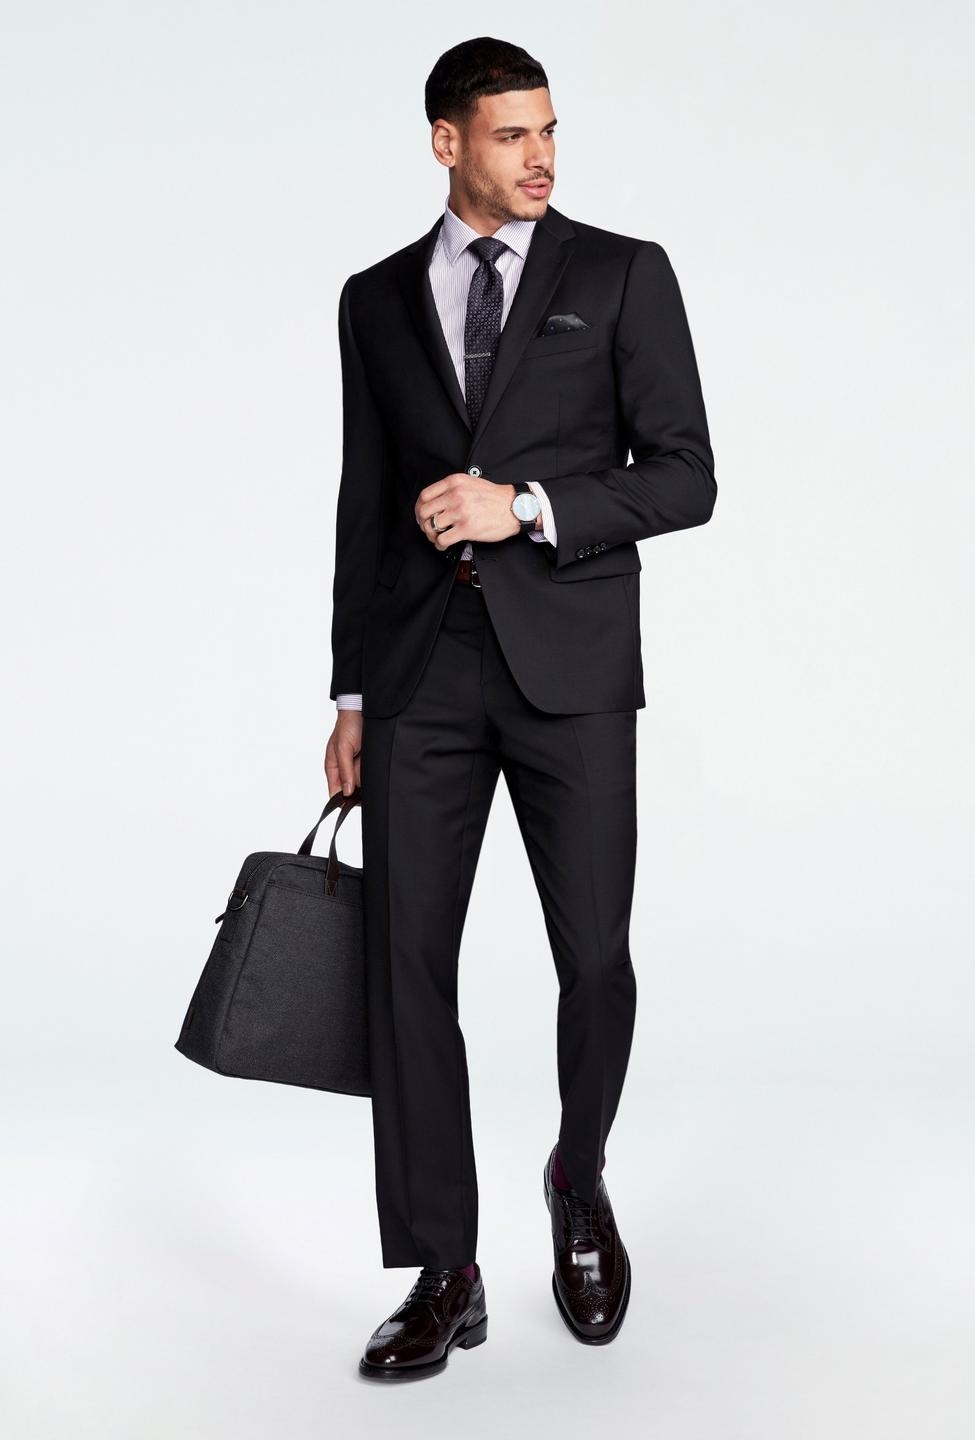 Black blazer - Hemsworth Solid Design from Premium Indochino Collection